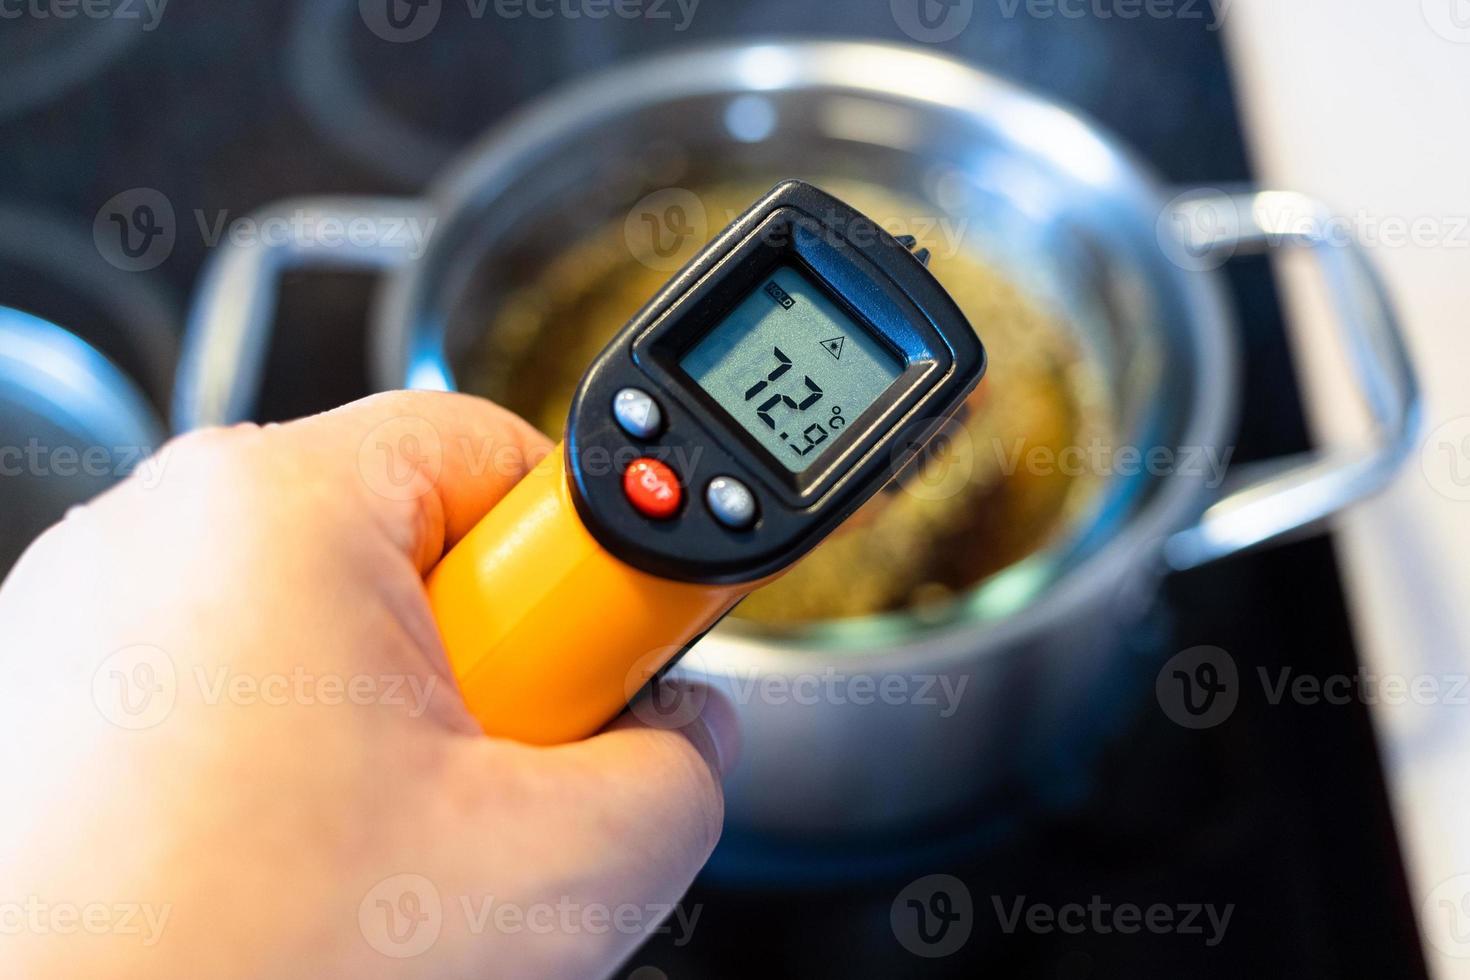 mesurer la température dans un bain-marie à l'aide d'un thermomètre photo